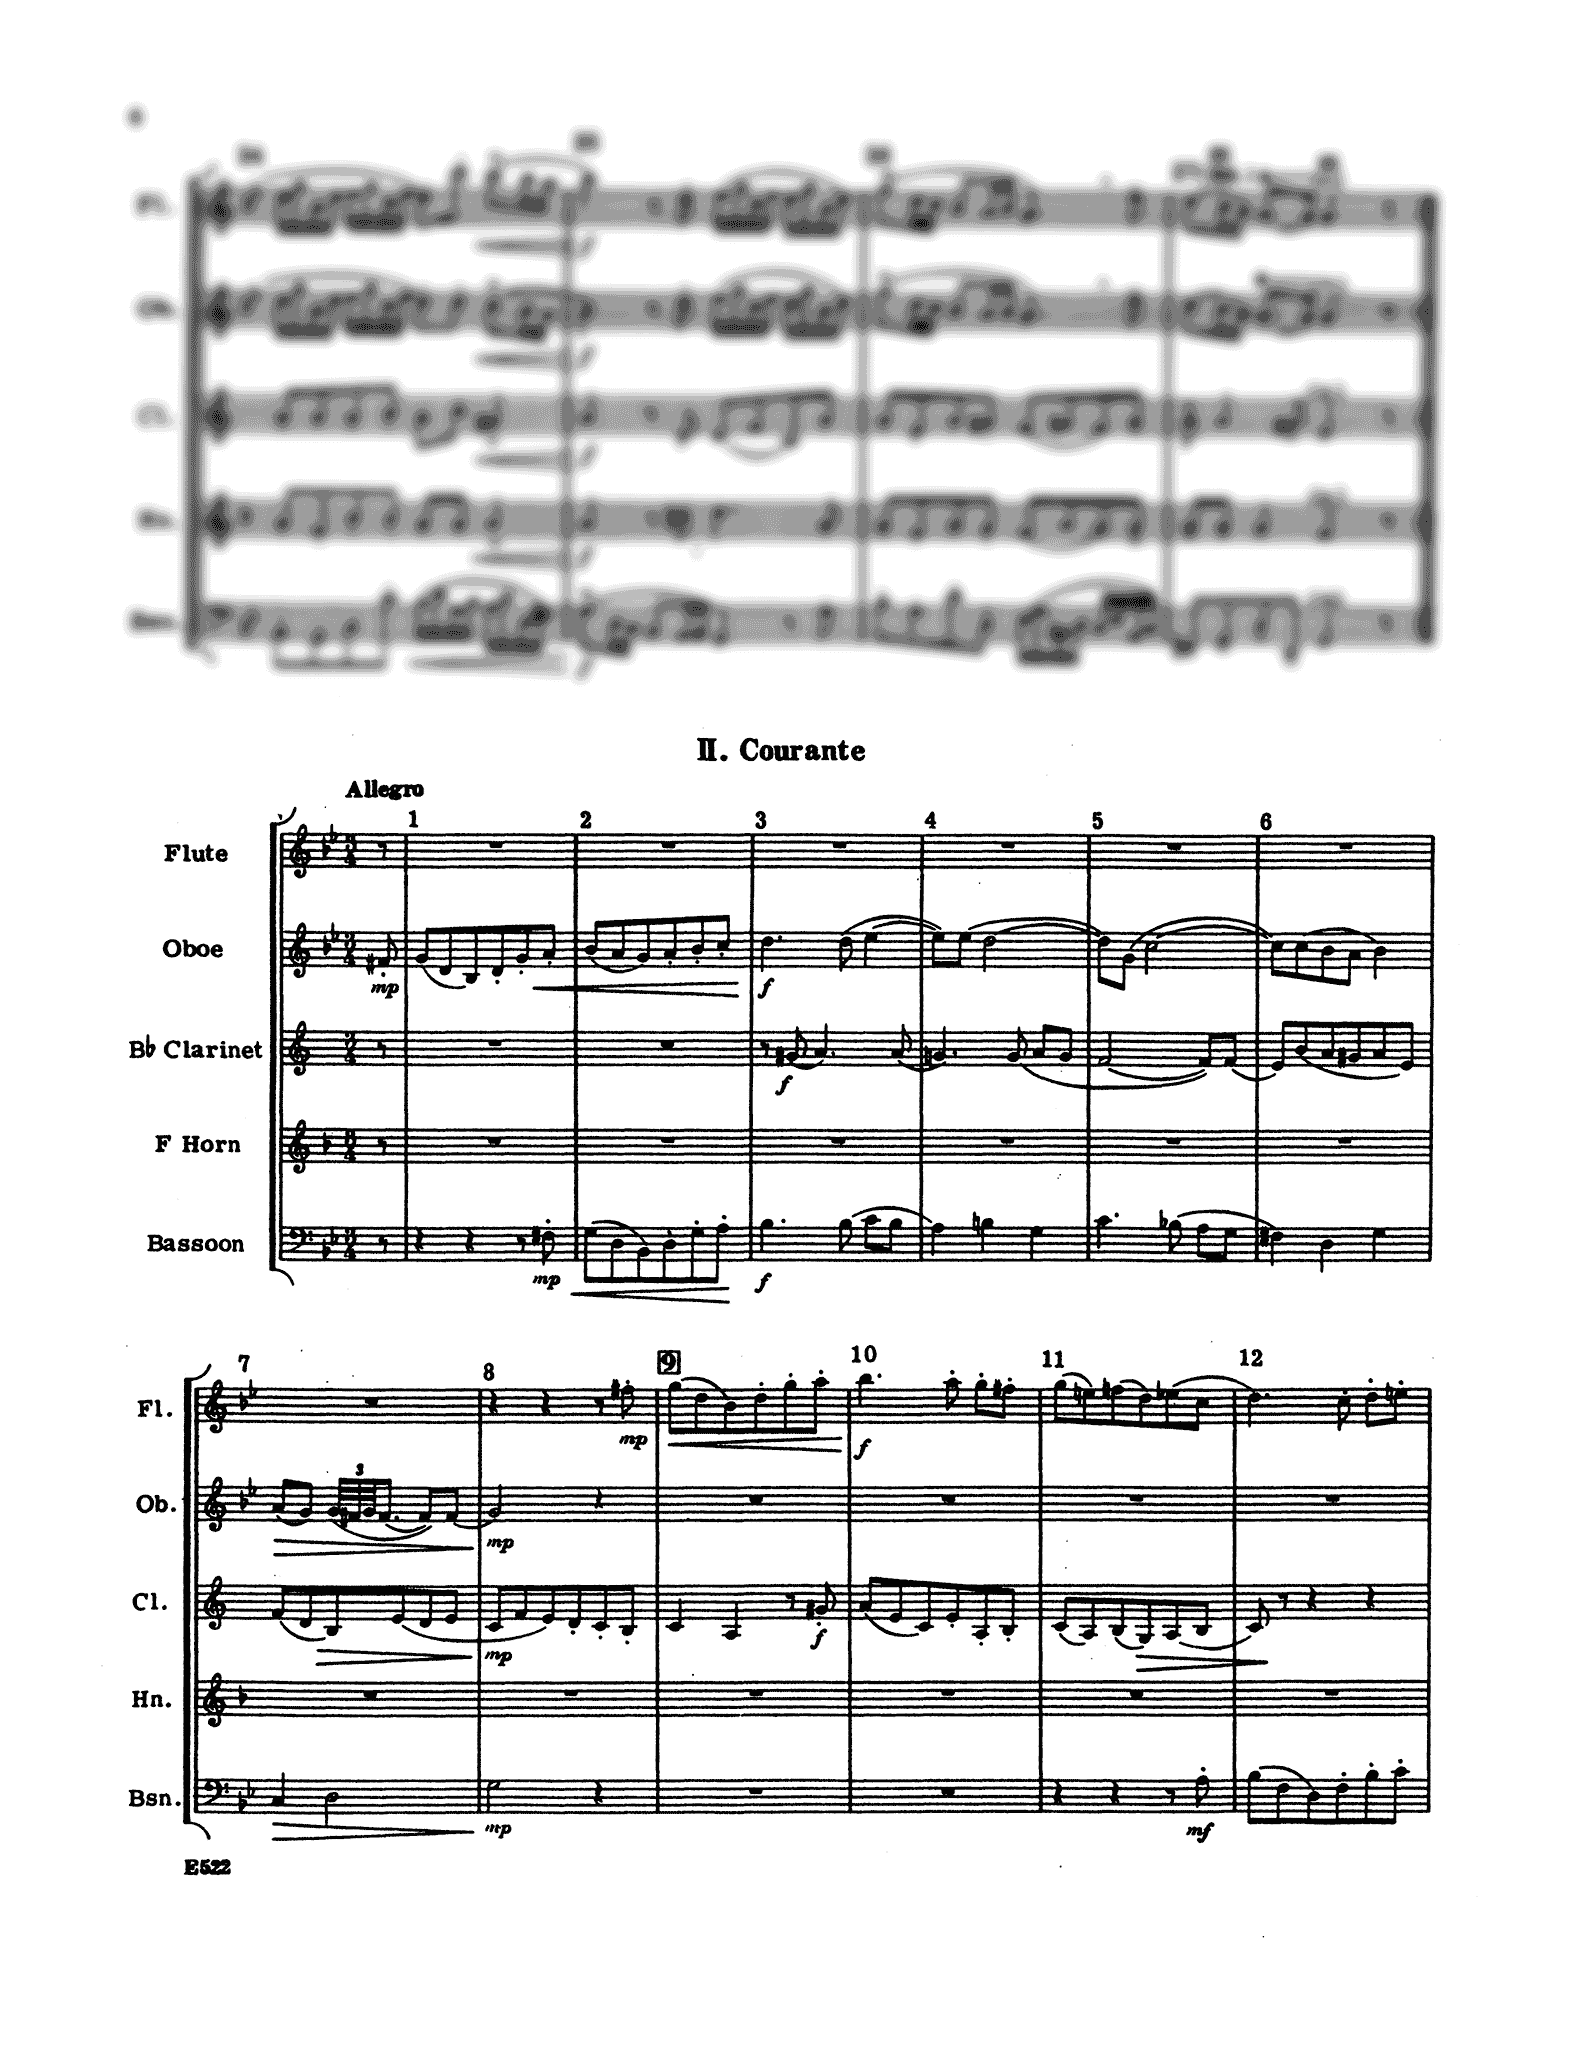 Handel Suite in G Minor, HWV 452 wind quintet arrangement - Movement 2